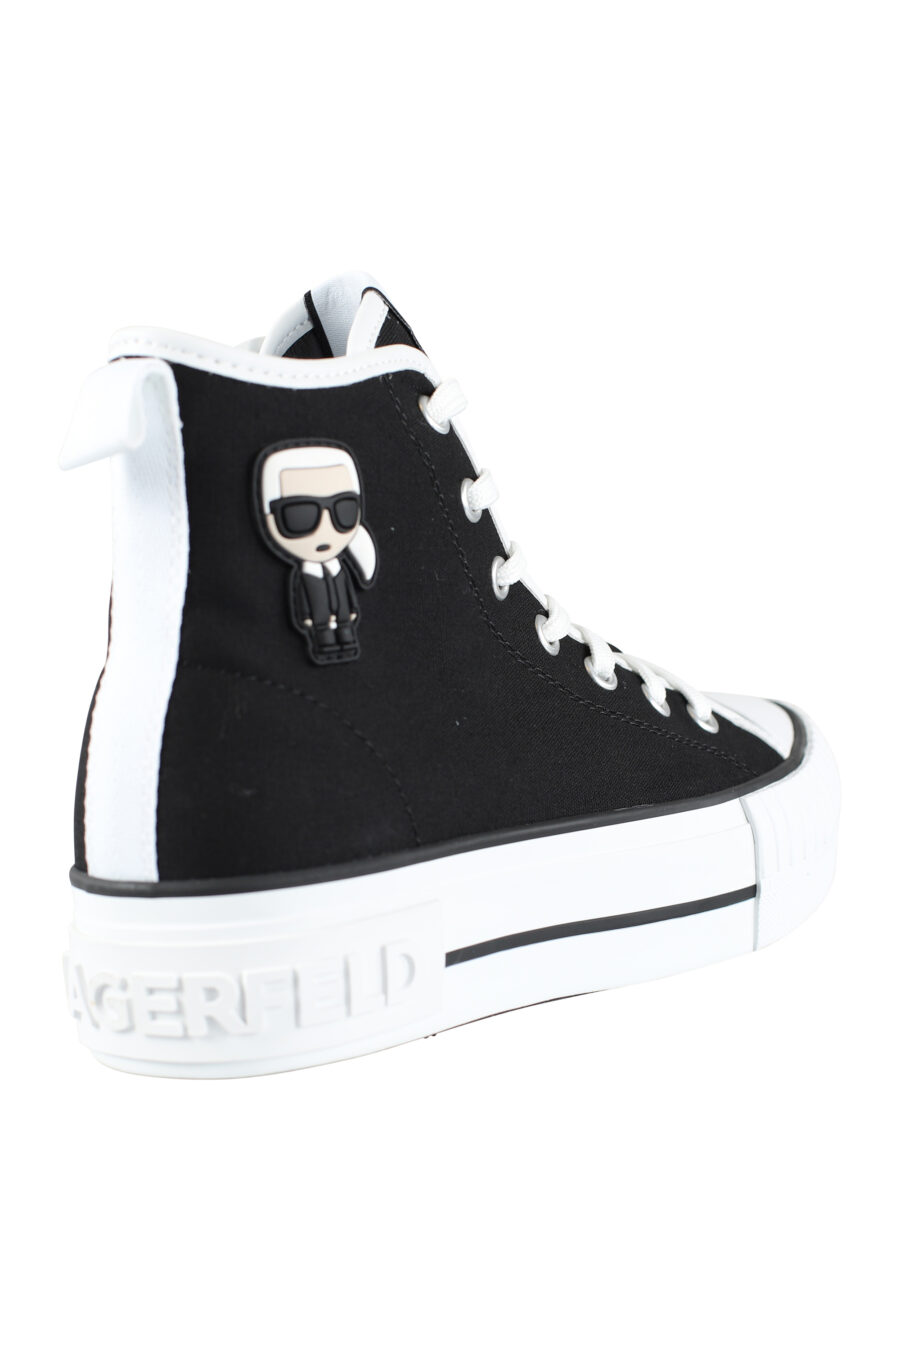 Zapatillas altas negras estilo converse con logo "karl" en goma - IMG 9581